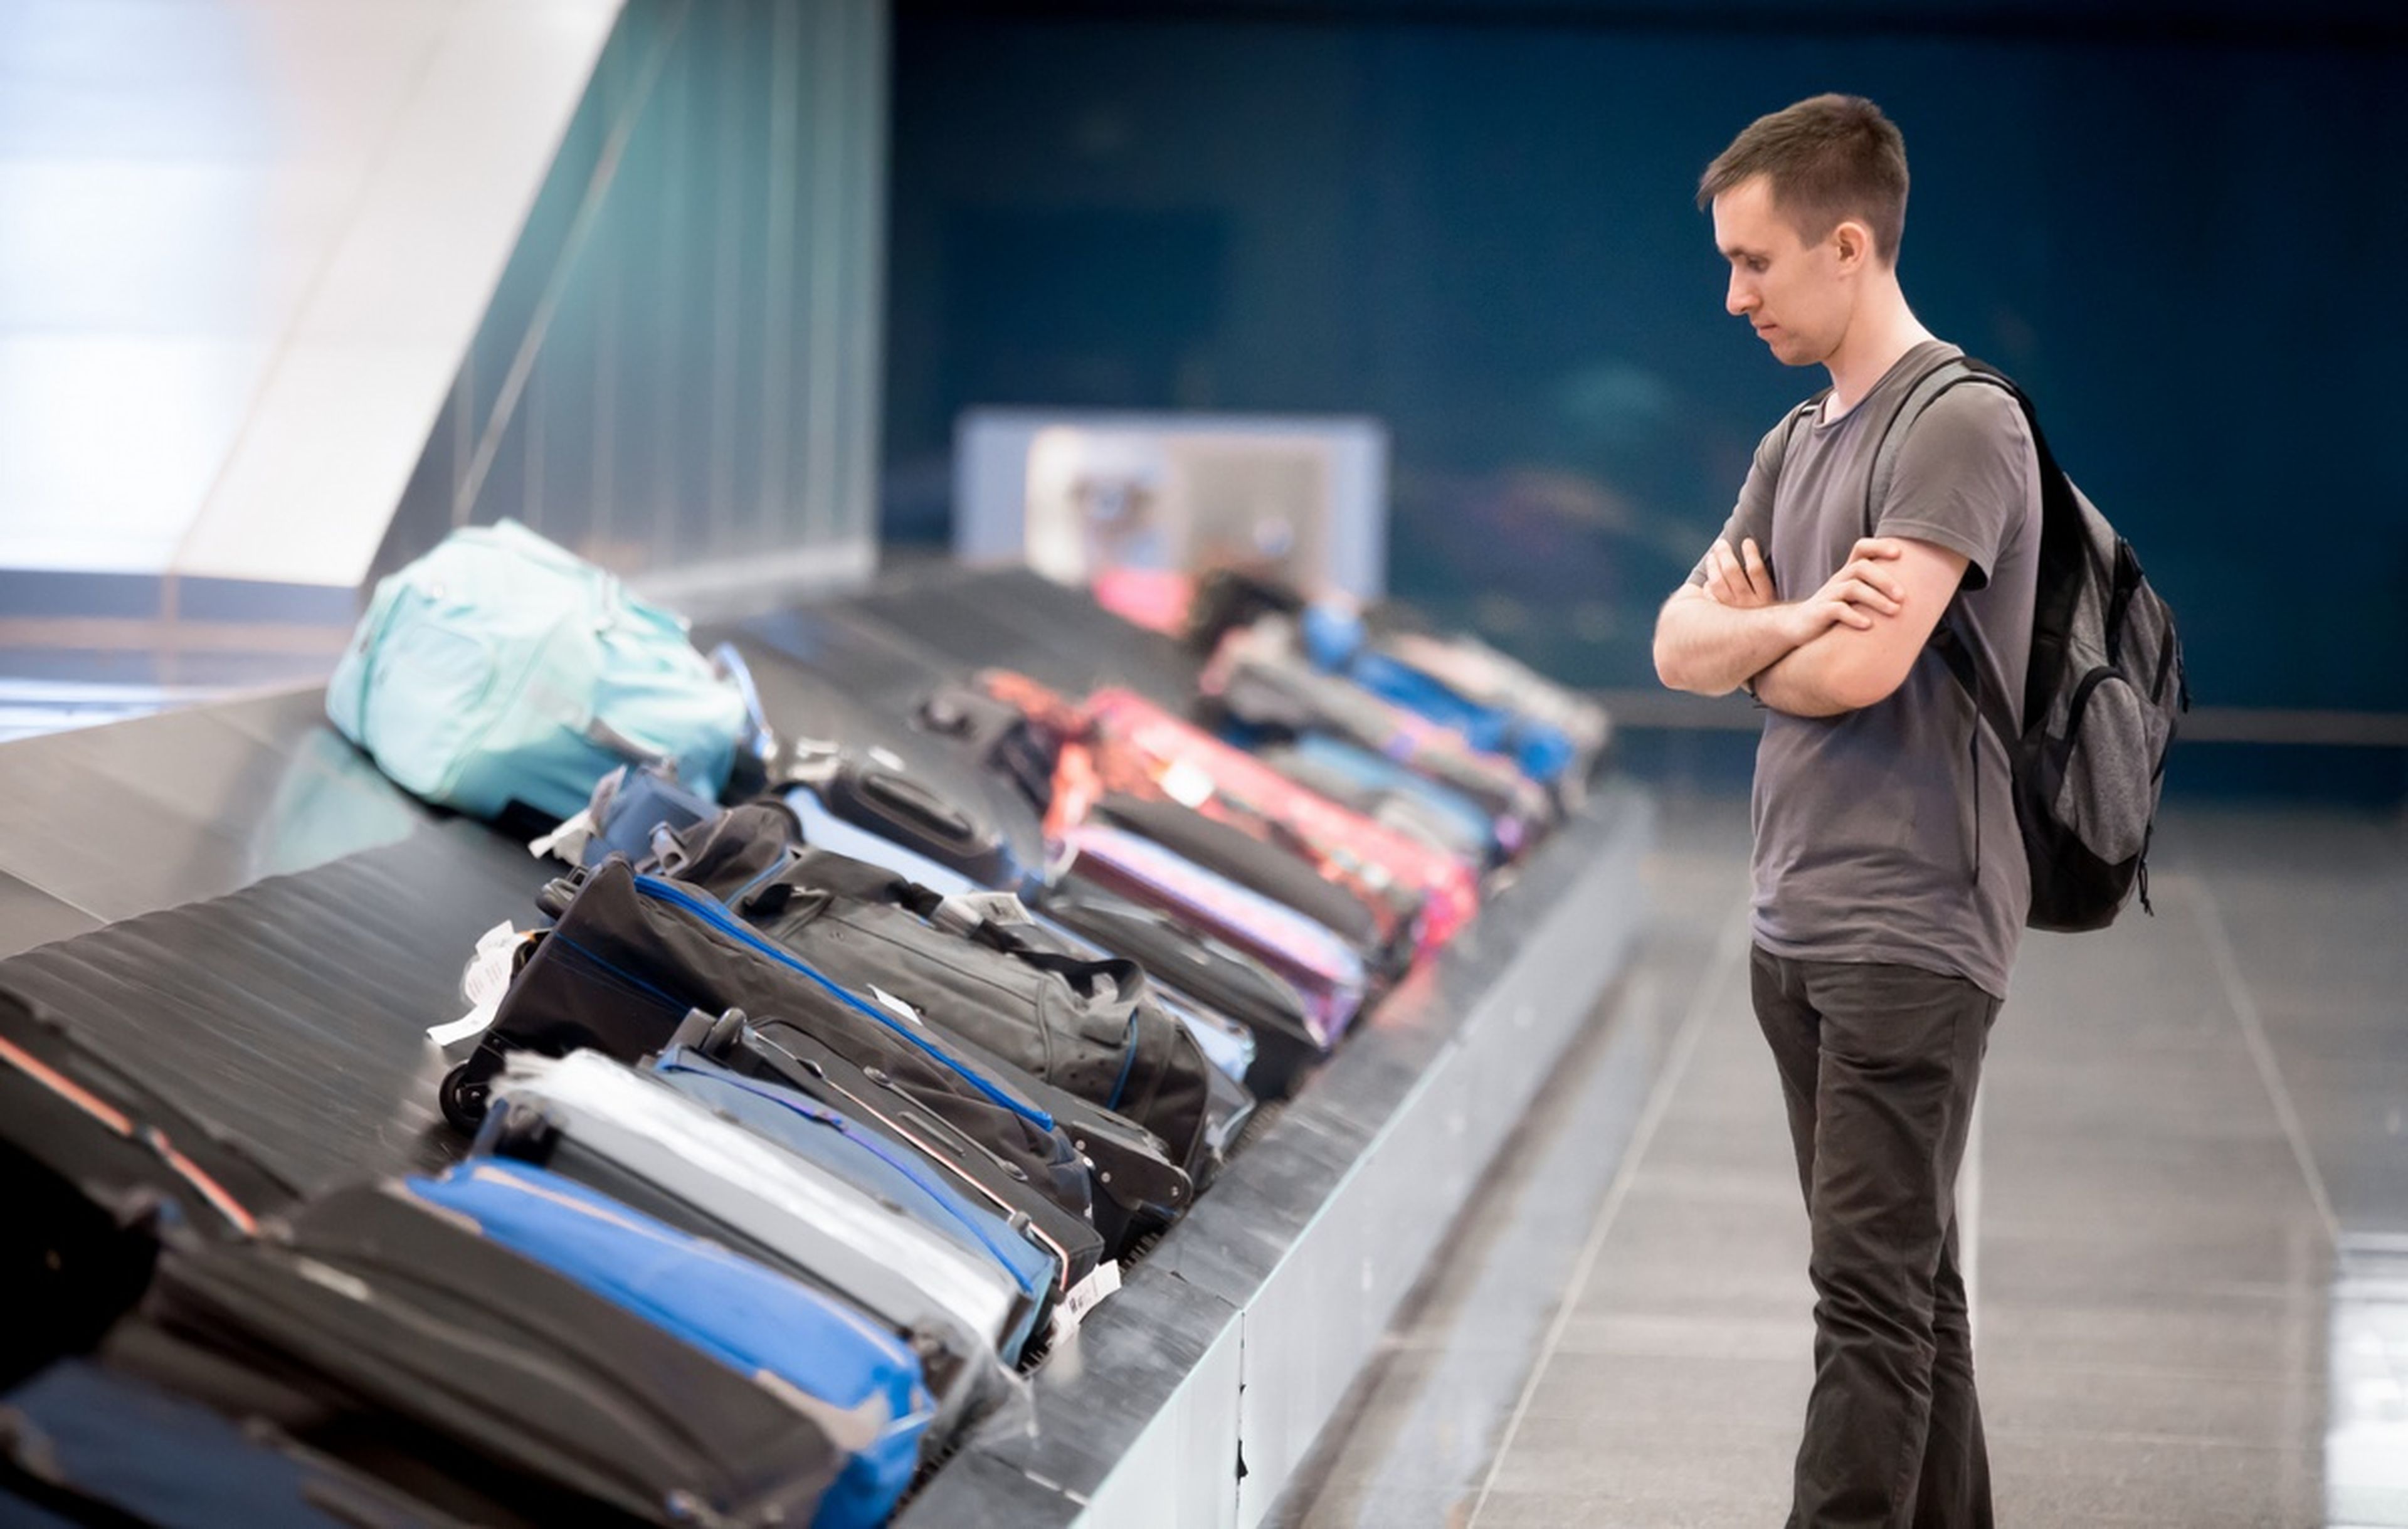 Trucos para que tu maleta sea la primera en la cinta de recogida del aeropuerto